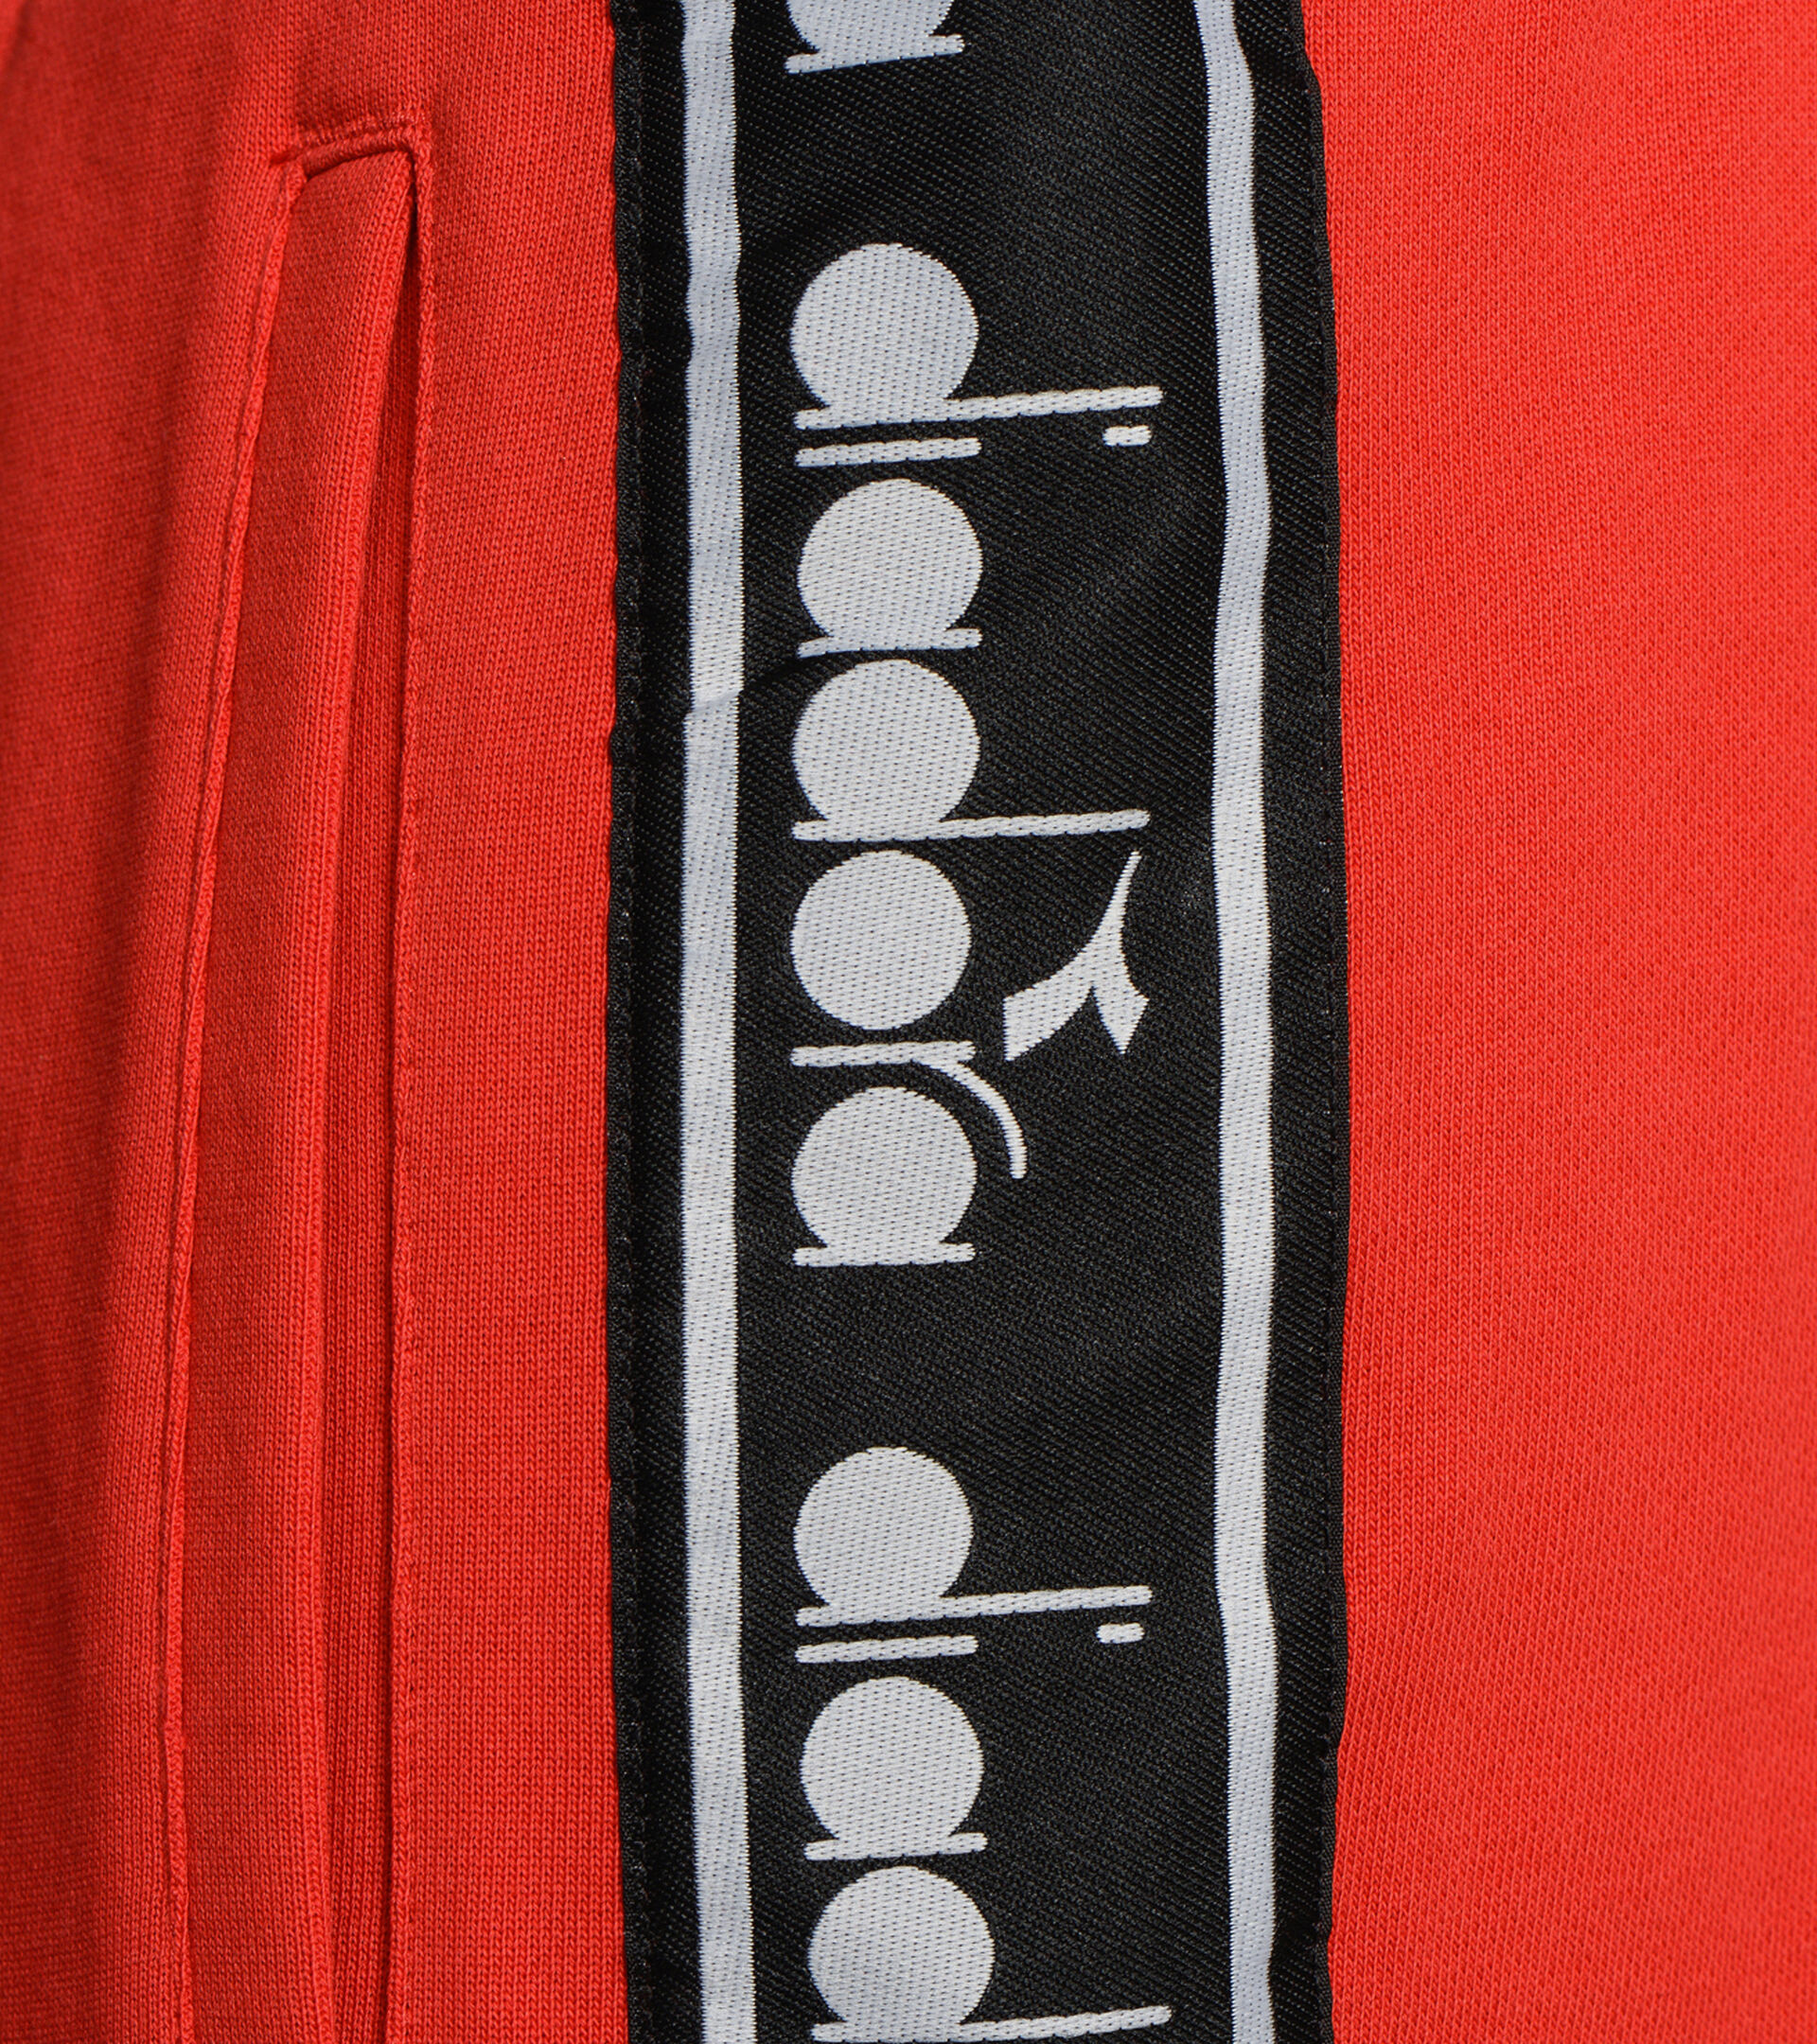 Sports trousers - Men PANT TROFEO TOMATO RED - Diadora